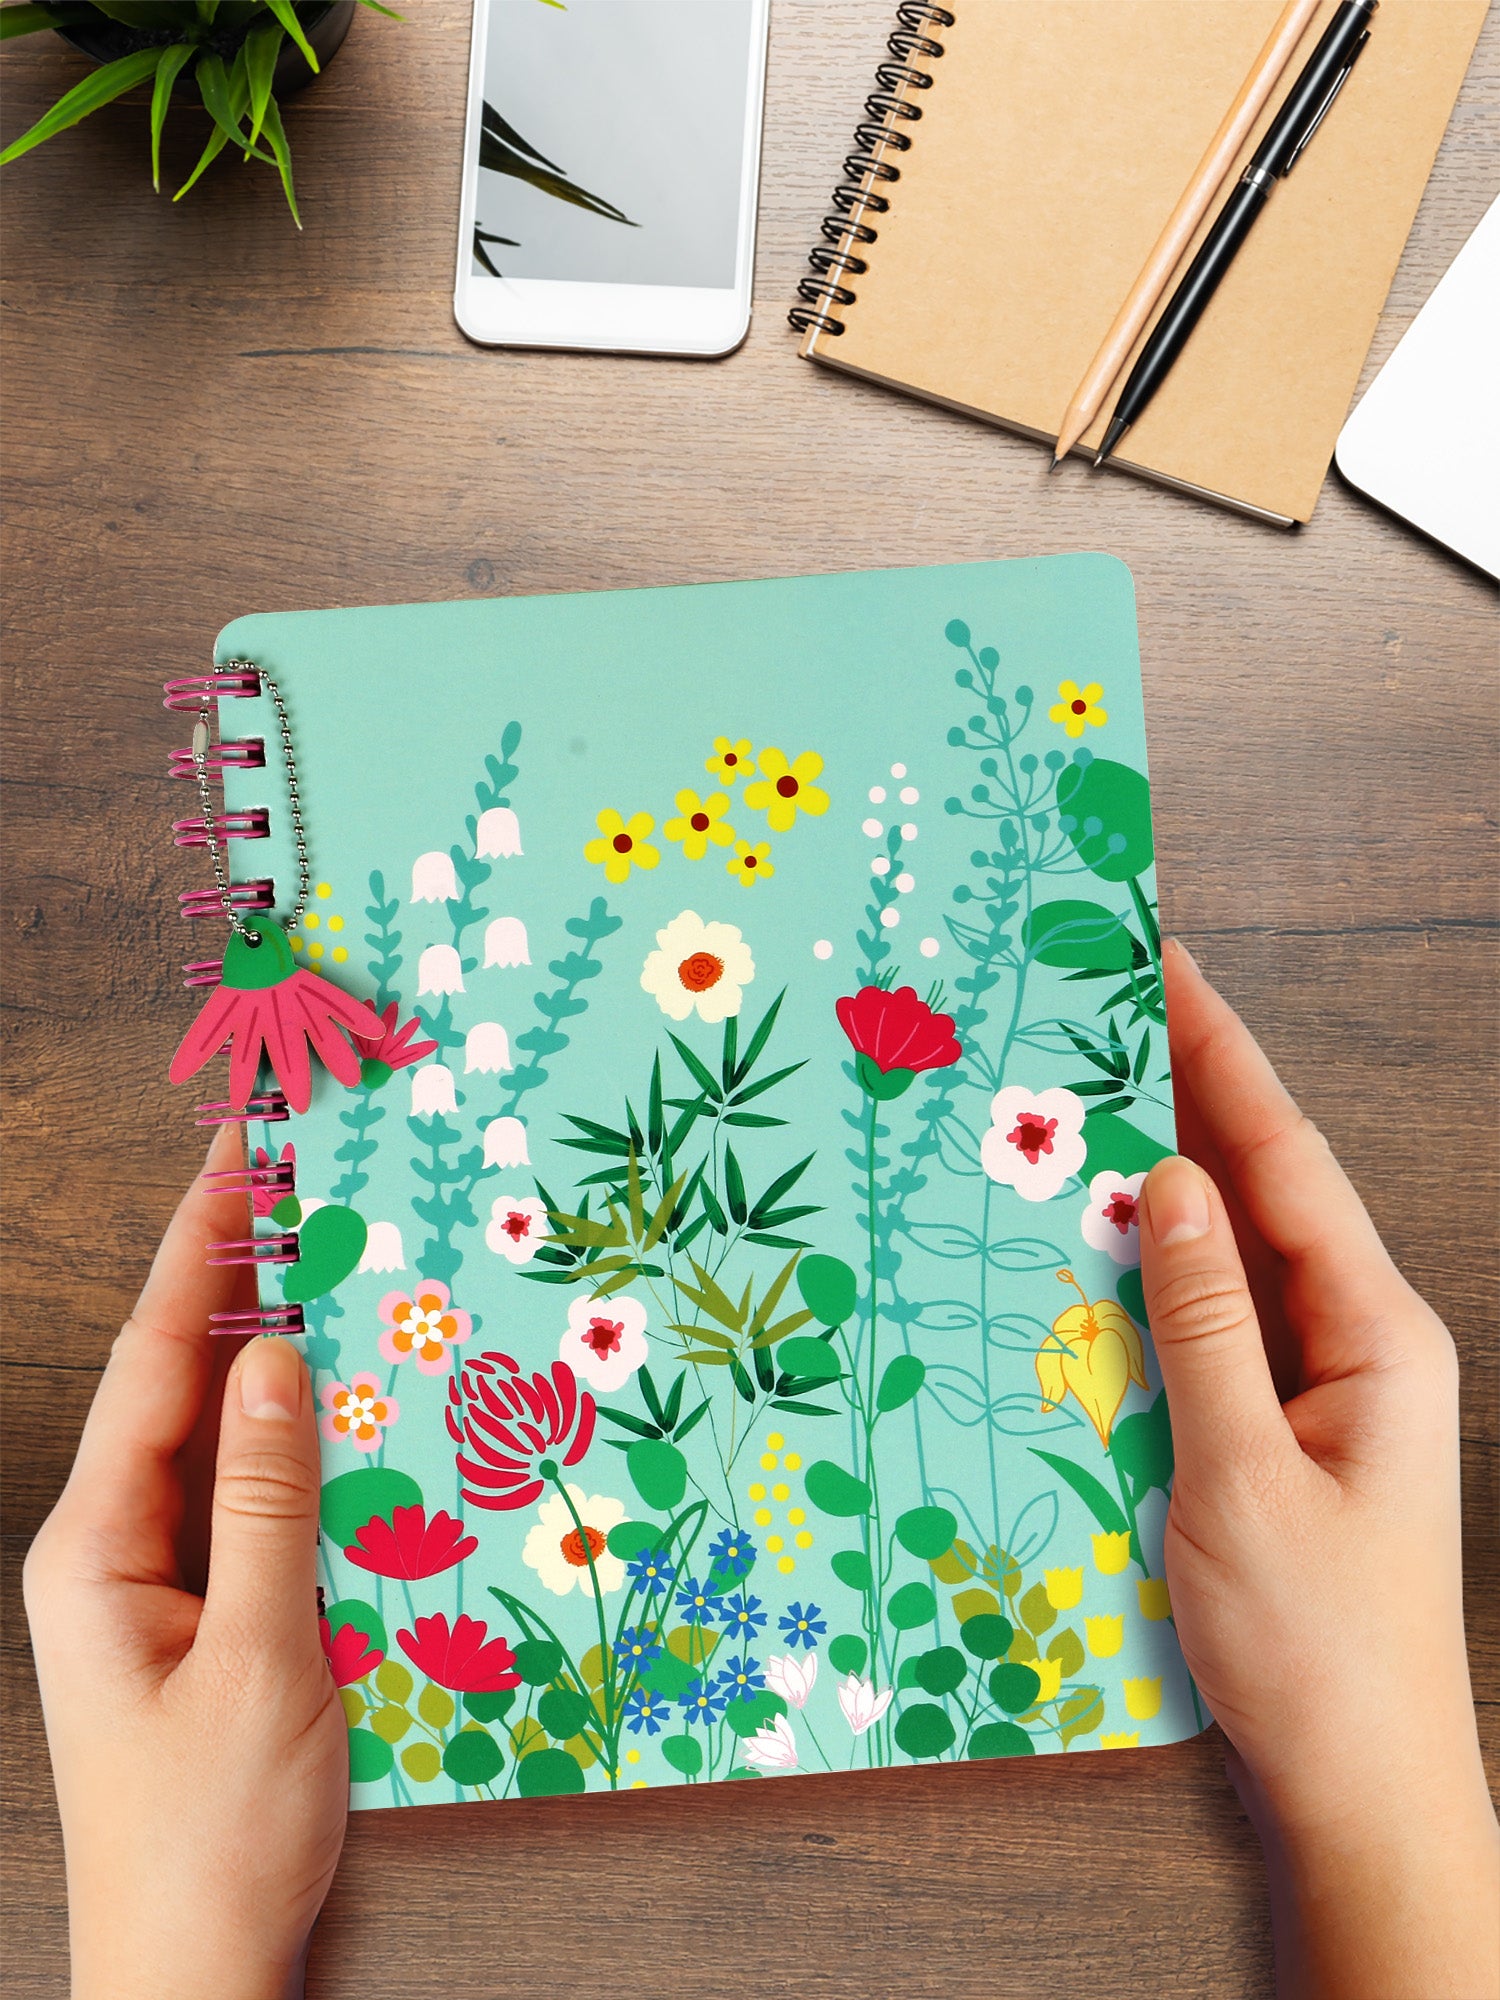 Floral Pop Hard Bound B5 Notebook - Wiro